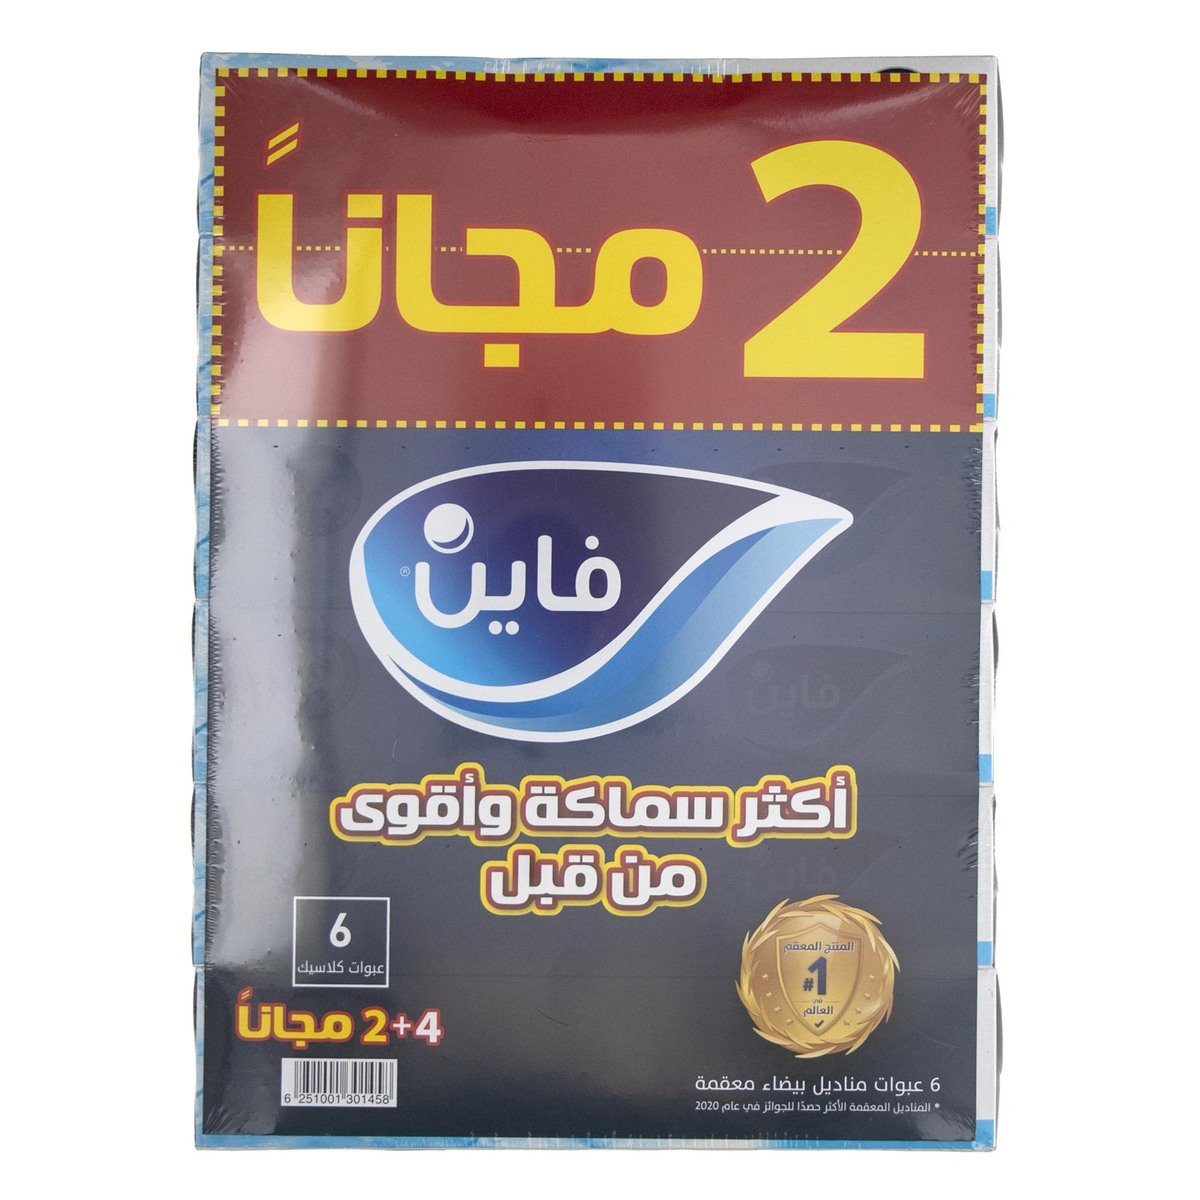 اشتري قم بشراء فاين مناديل للوجه كلاسيك طبقتين 86 منديل 4+2 مجاناً Online at Best Price من الموقع - من لولو هايبر ماركت Facial Tissues في السعودية